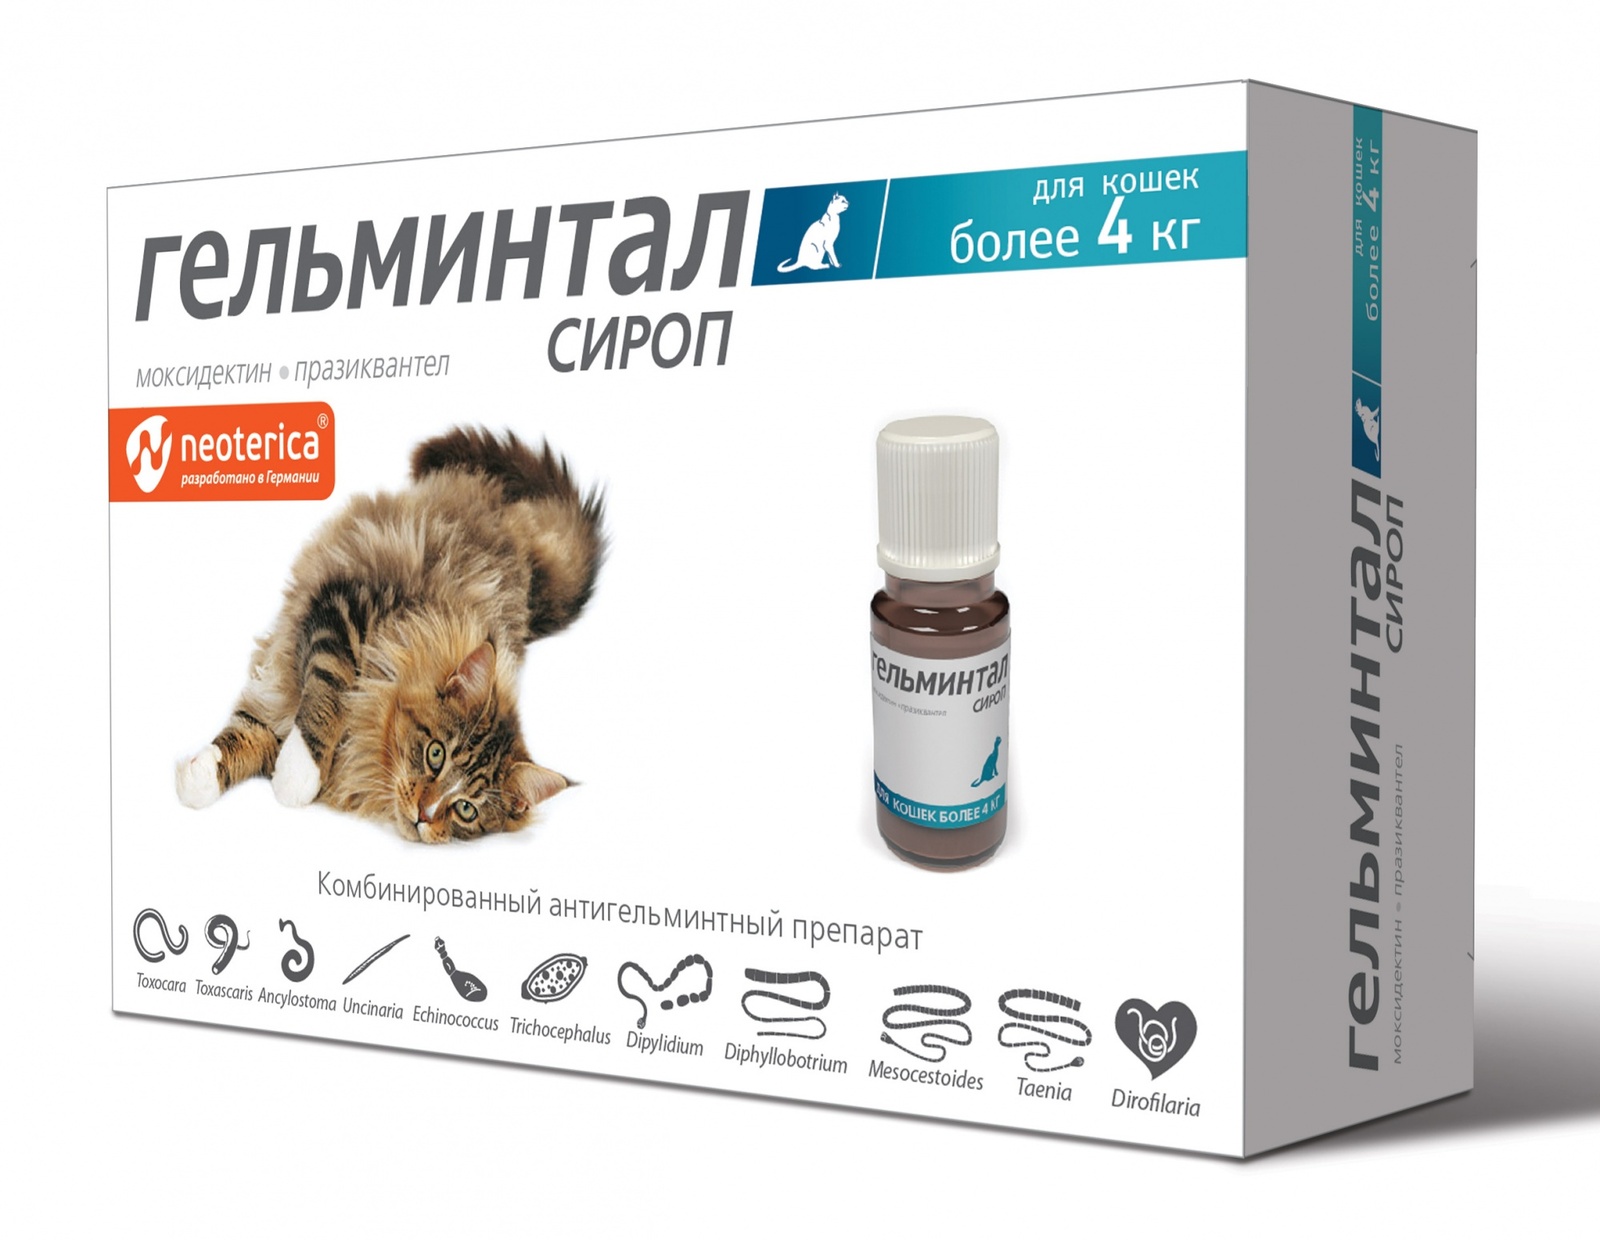 Гельминтал Гельминтал сироп от глистов, для кошек более 4 кг, 5 мл (60 г) гельминтал сироп для собак более 10 кг от ленточных и круглых гельминтов 10 мл